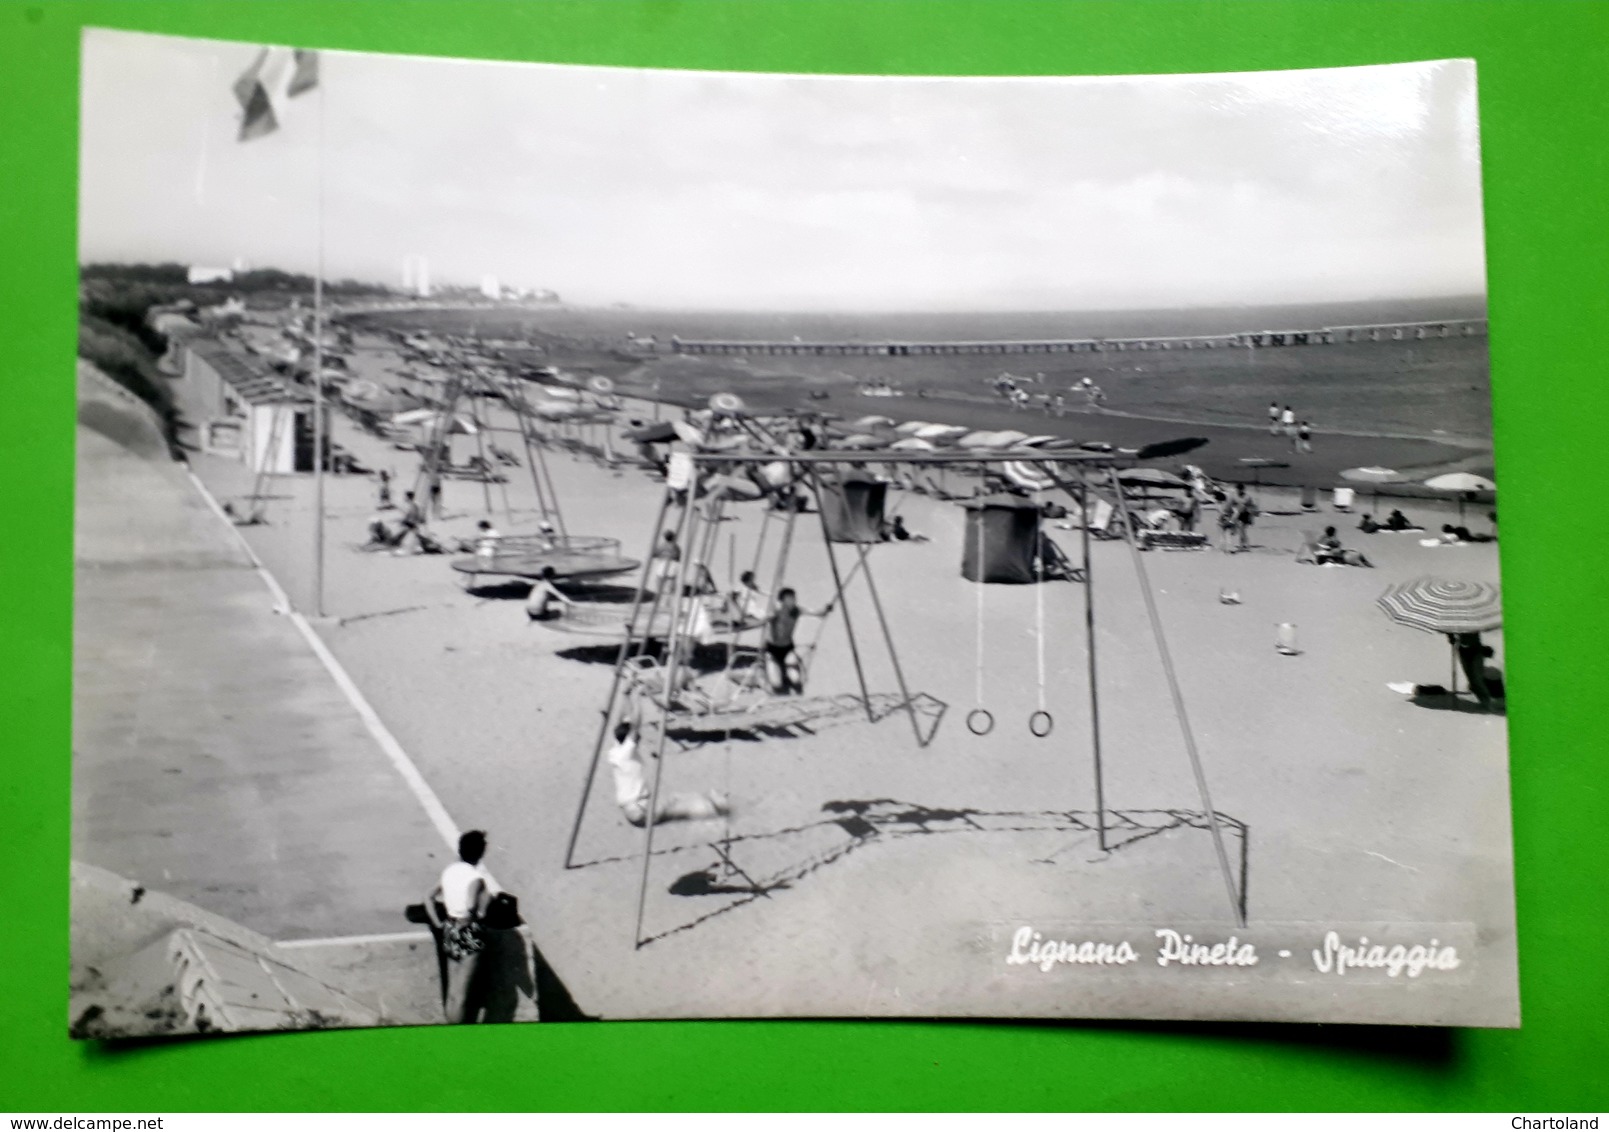 Cartolina - Lignano Pineta - Spiaggia - 1959 - Udine